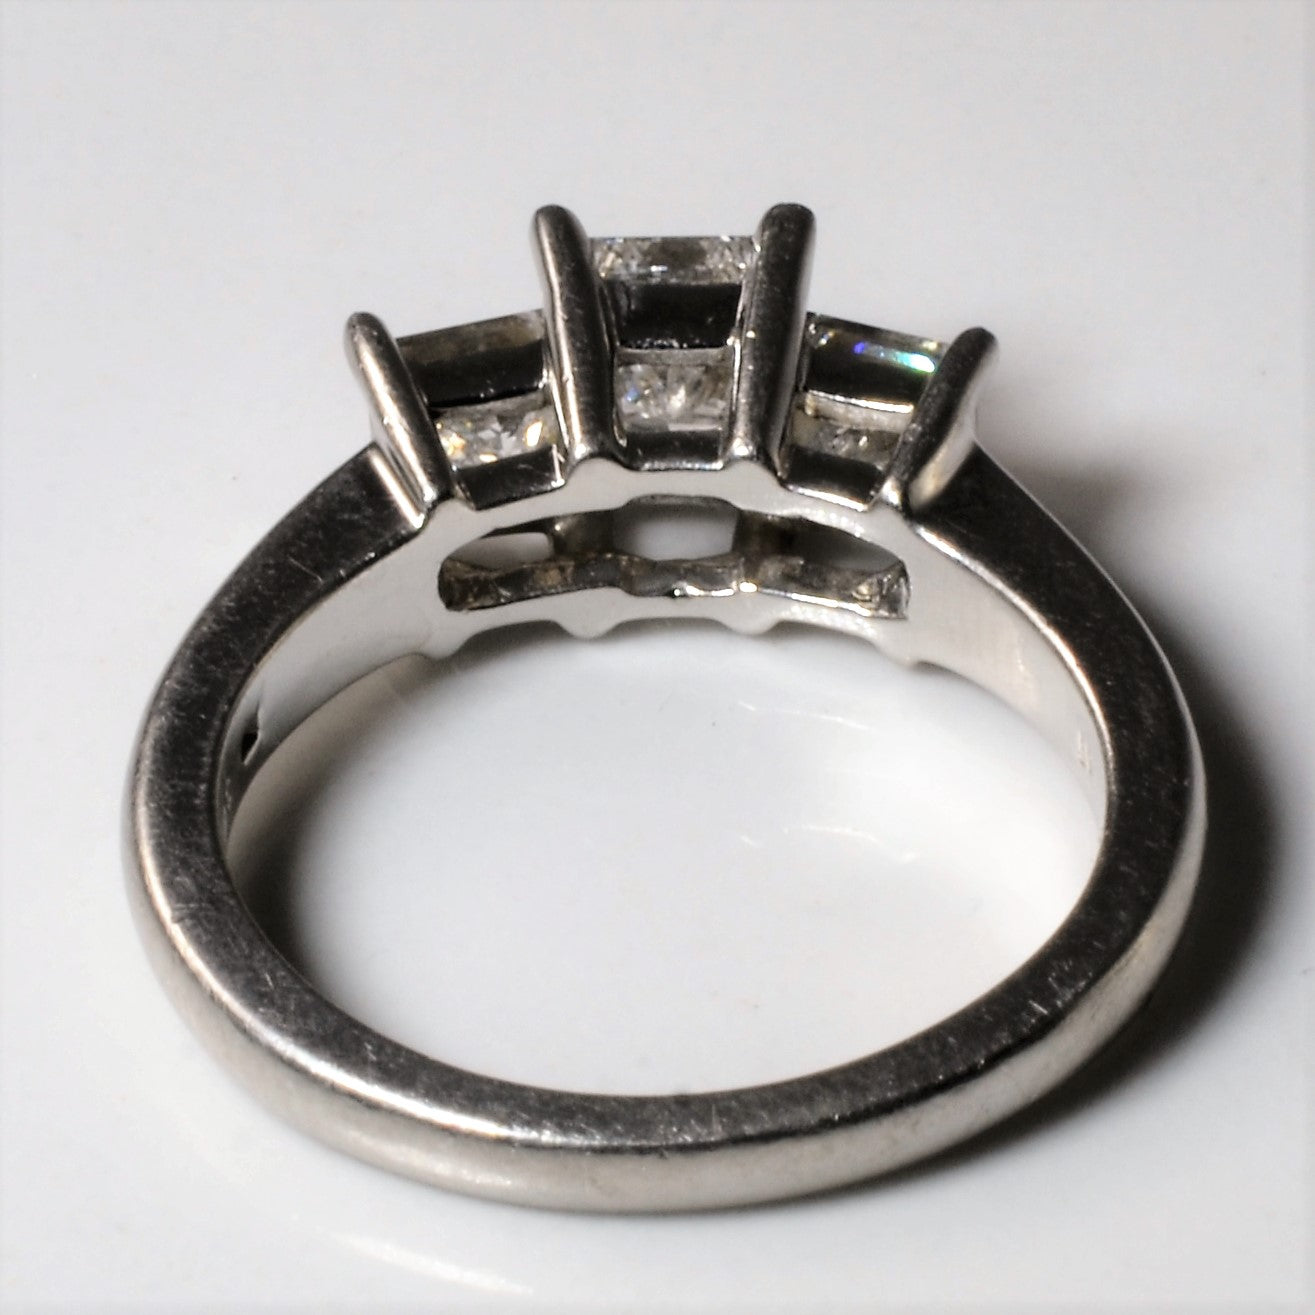 Three Stone Princess Diamond Ring | 1.53ctw | SZ 6.75 |